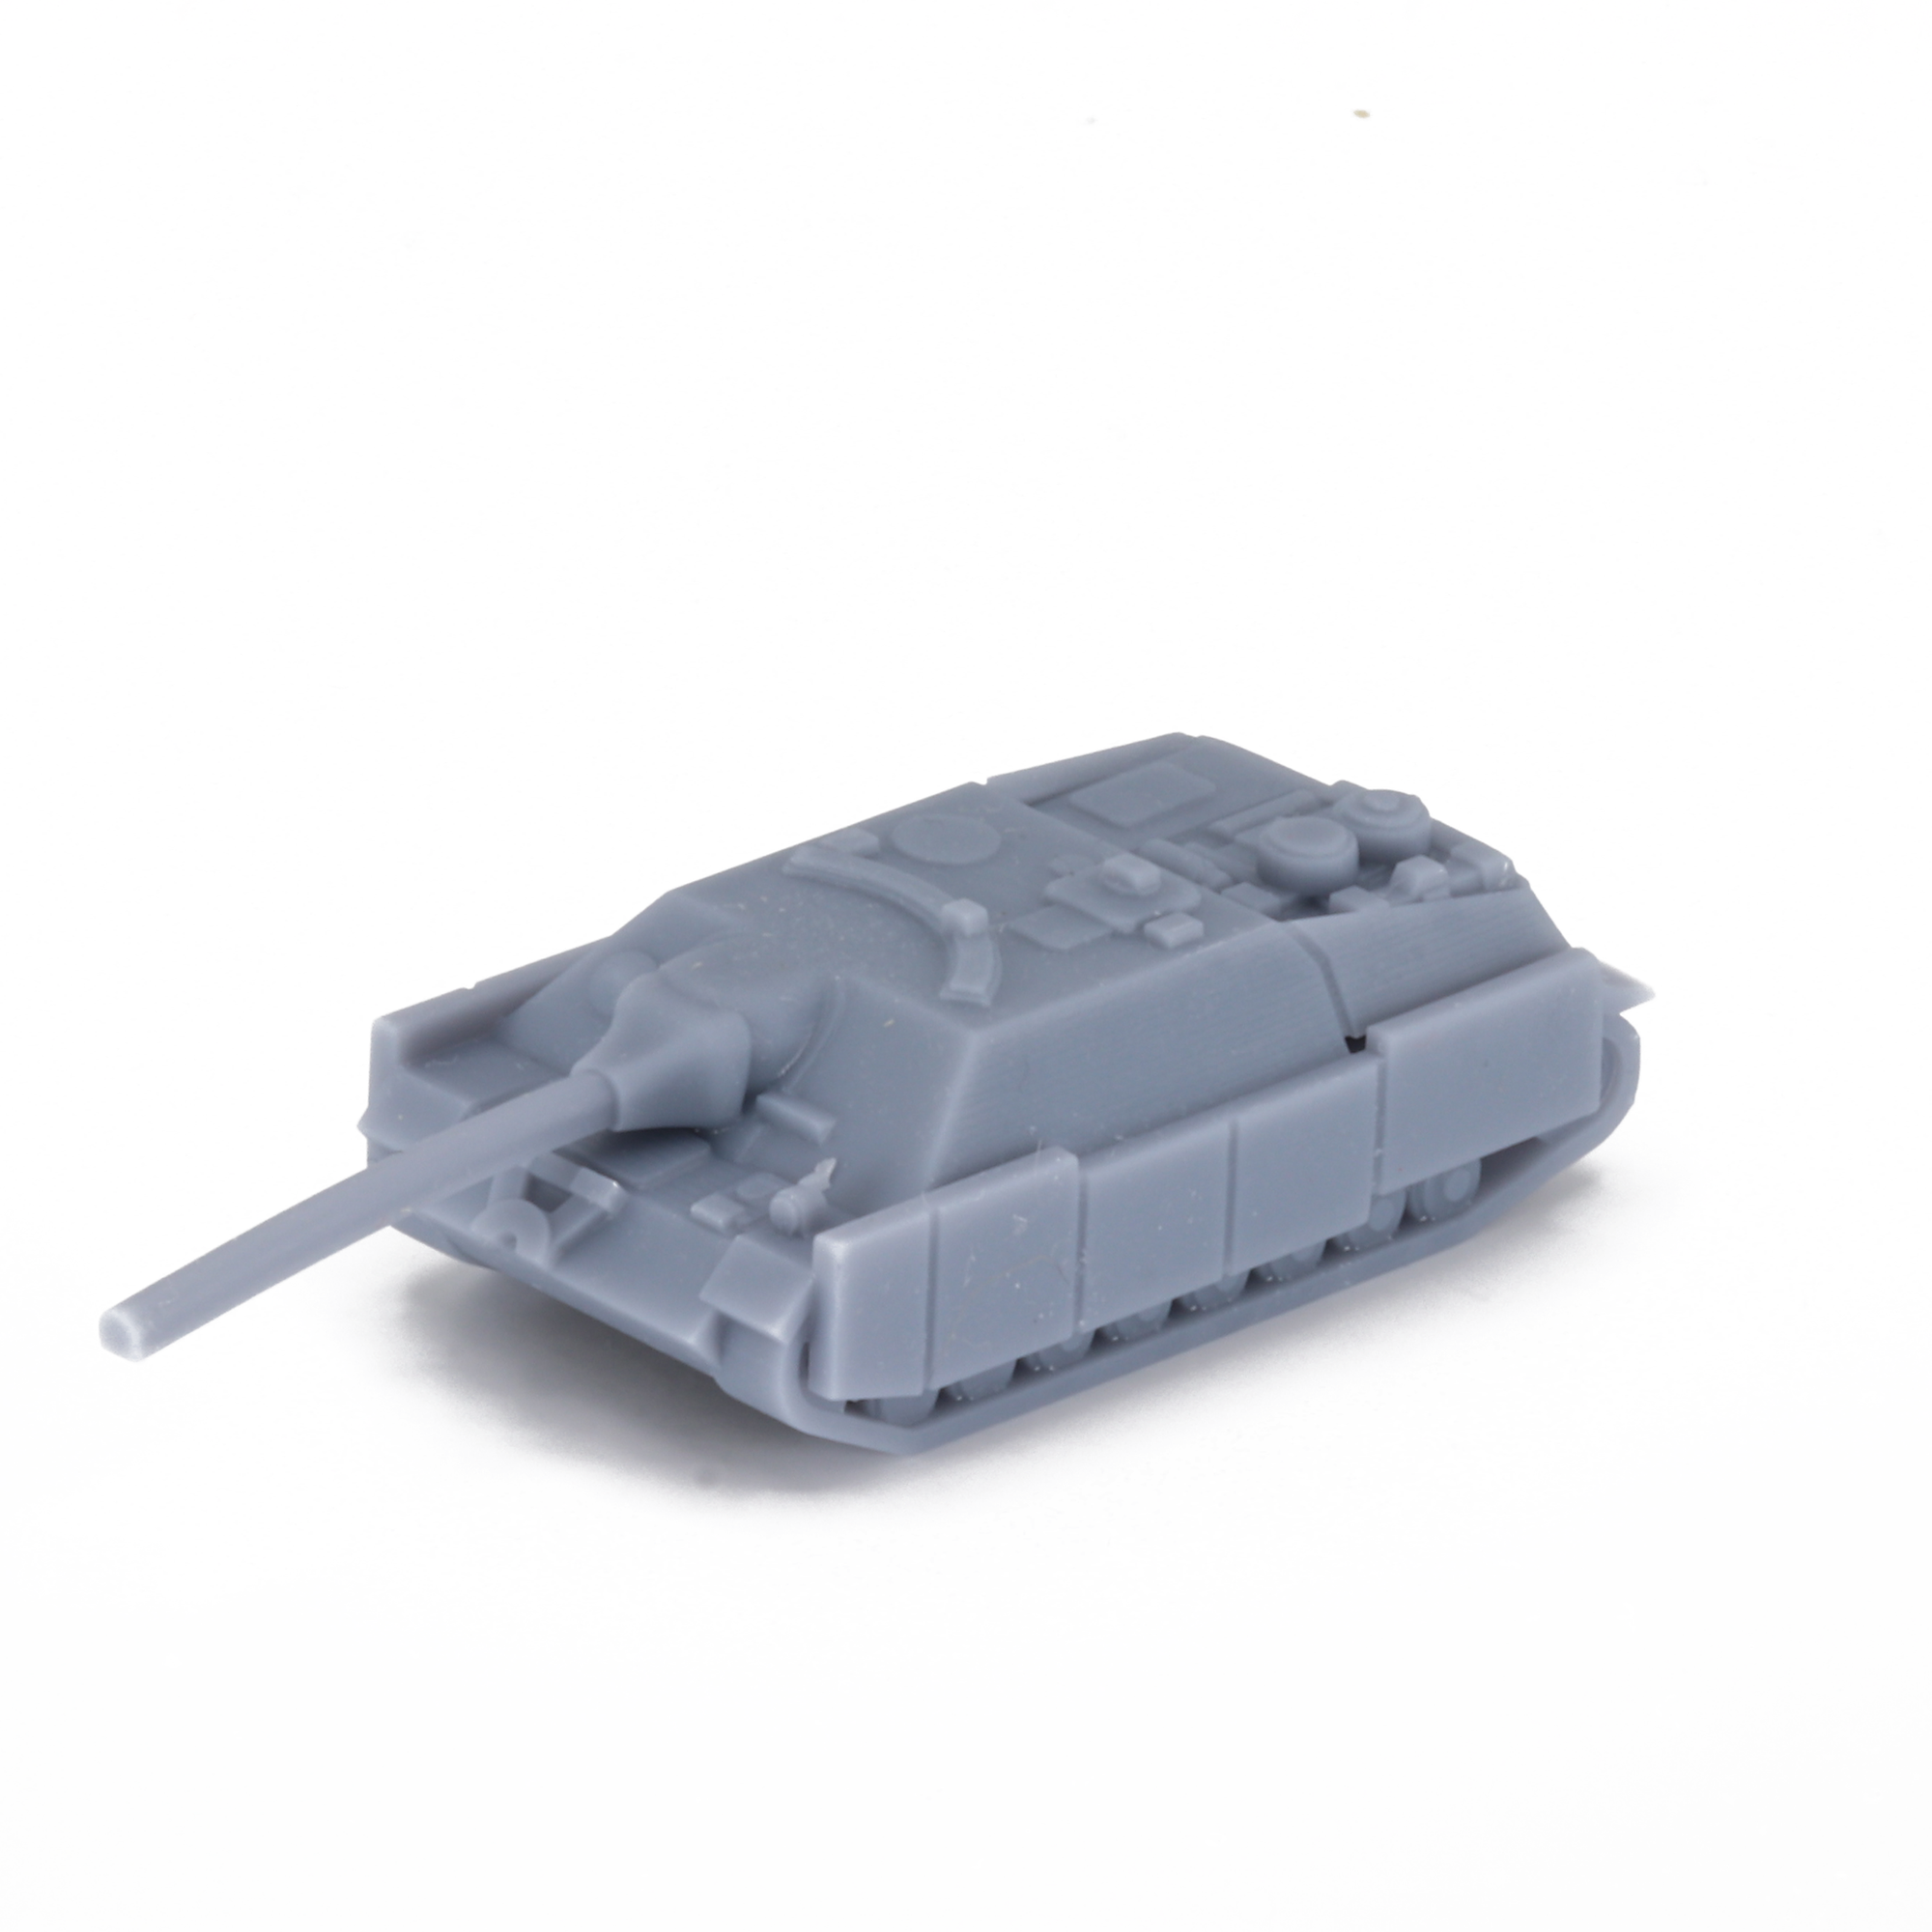 Jagdpanzer IV L70 Schurzen